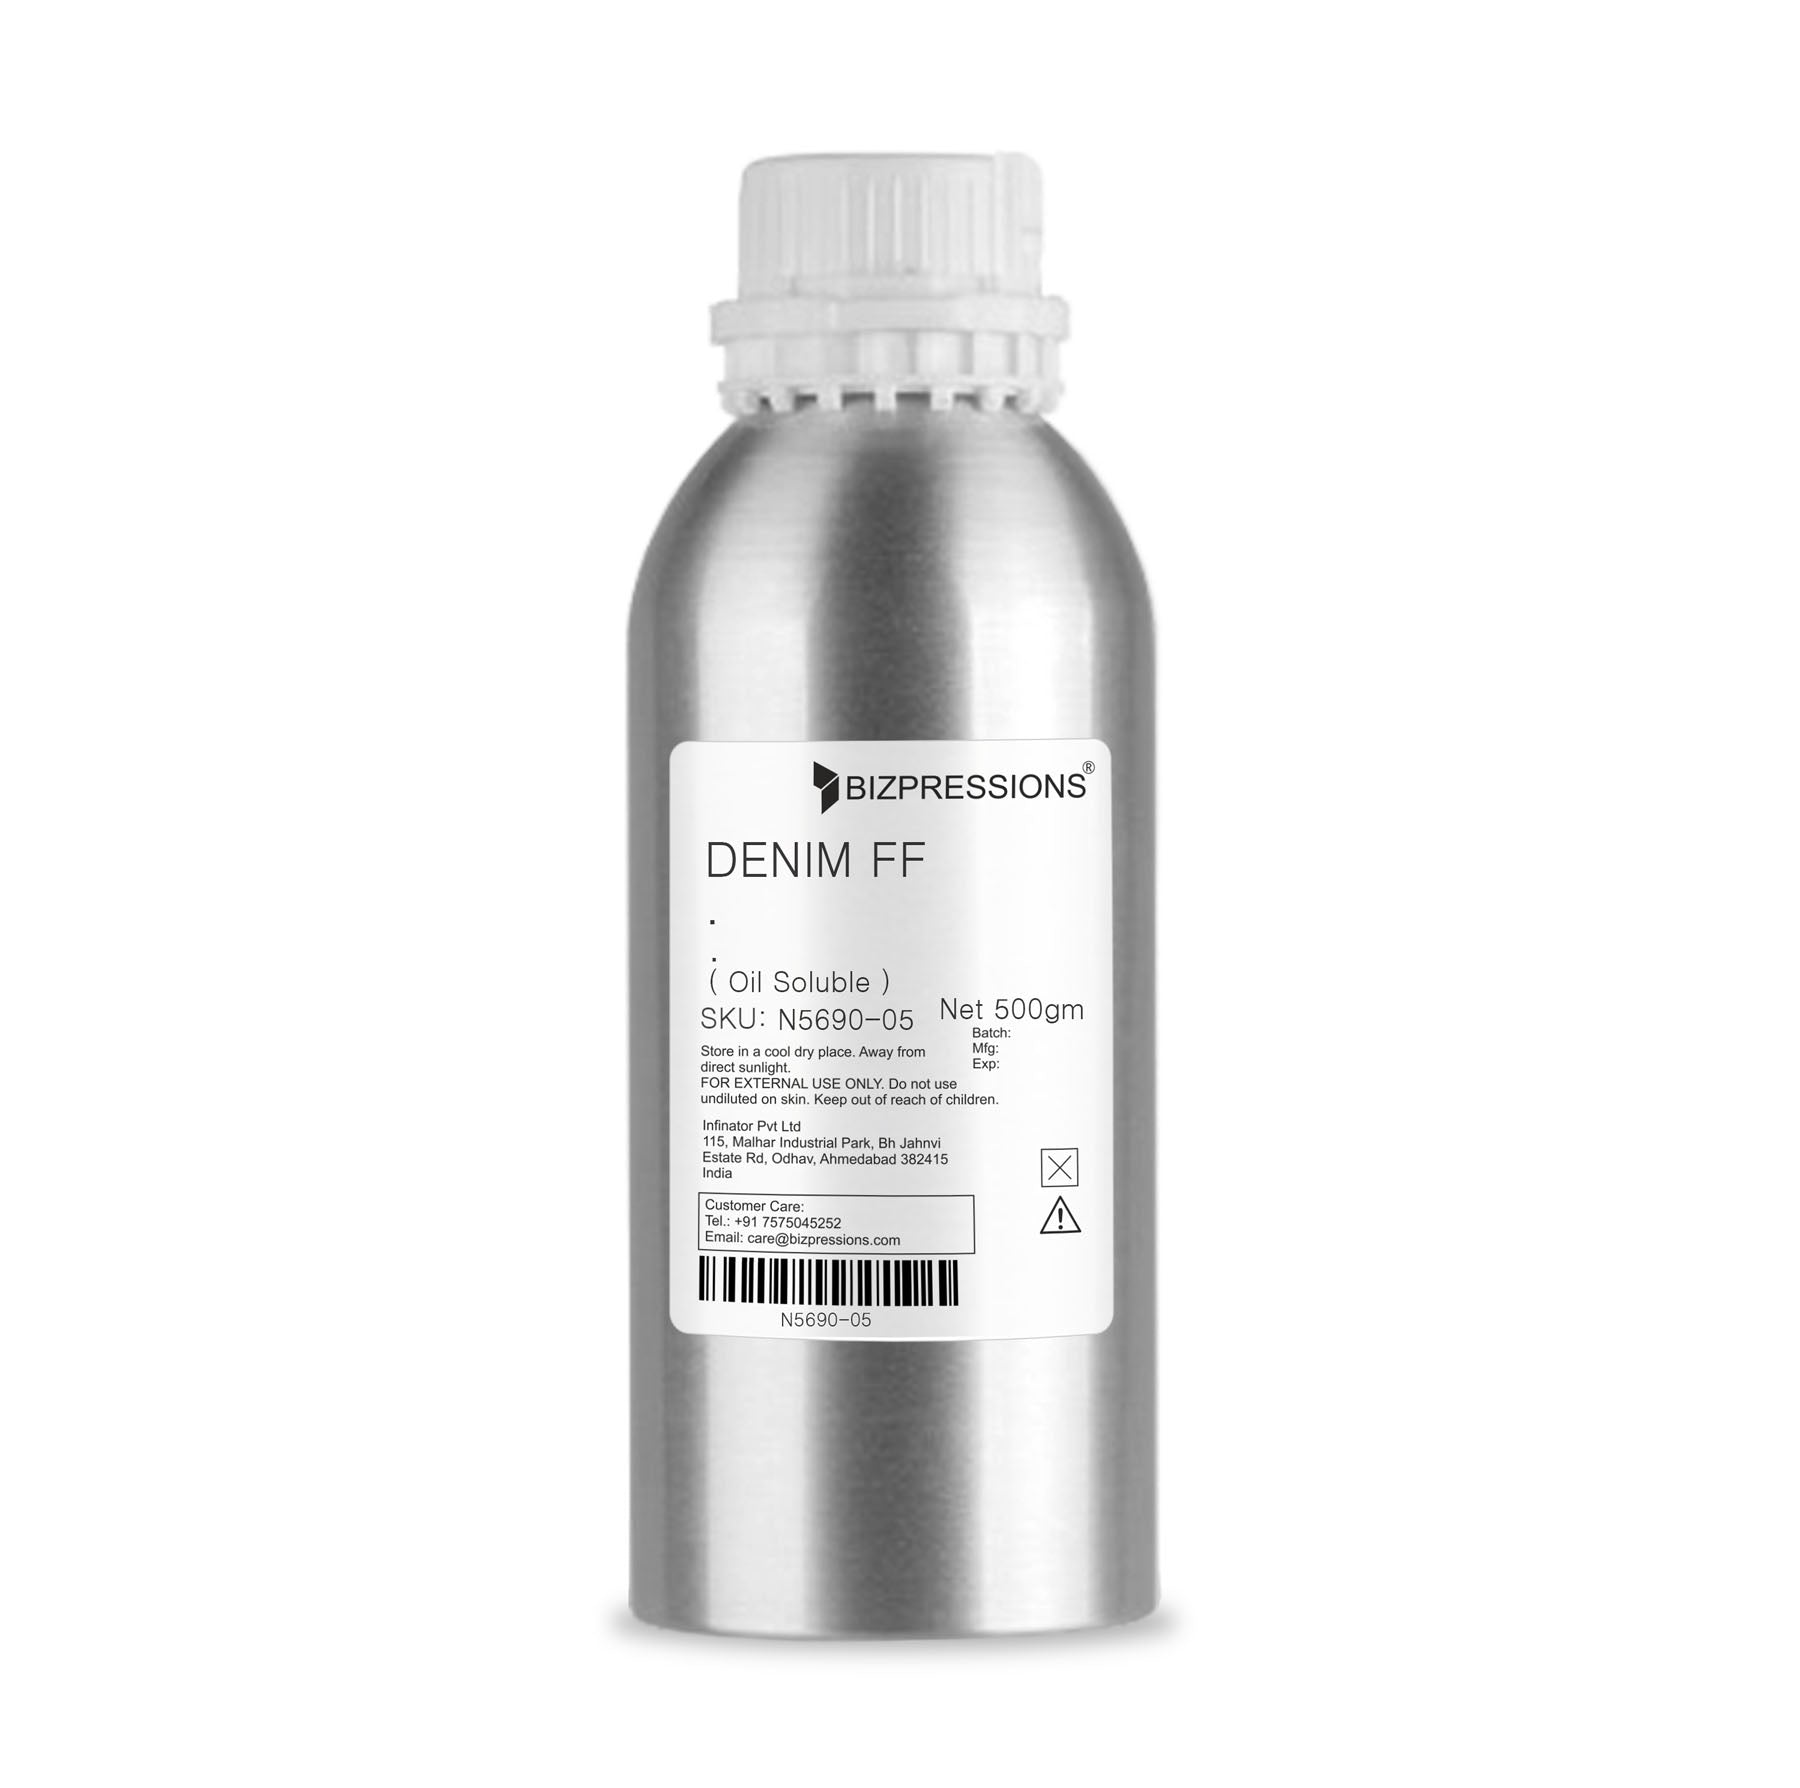 DENIM FF - Fragrance ( Oil Soluble ) - 500 gm